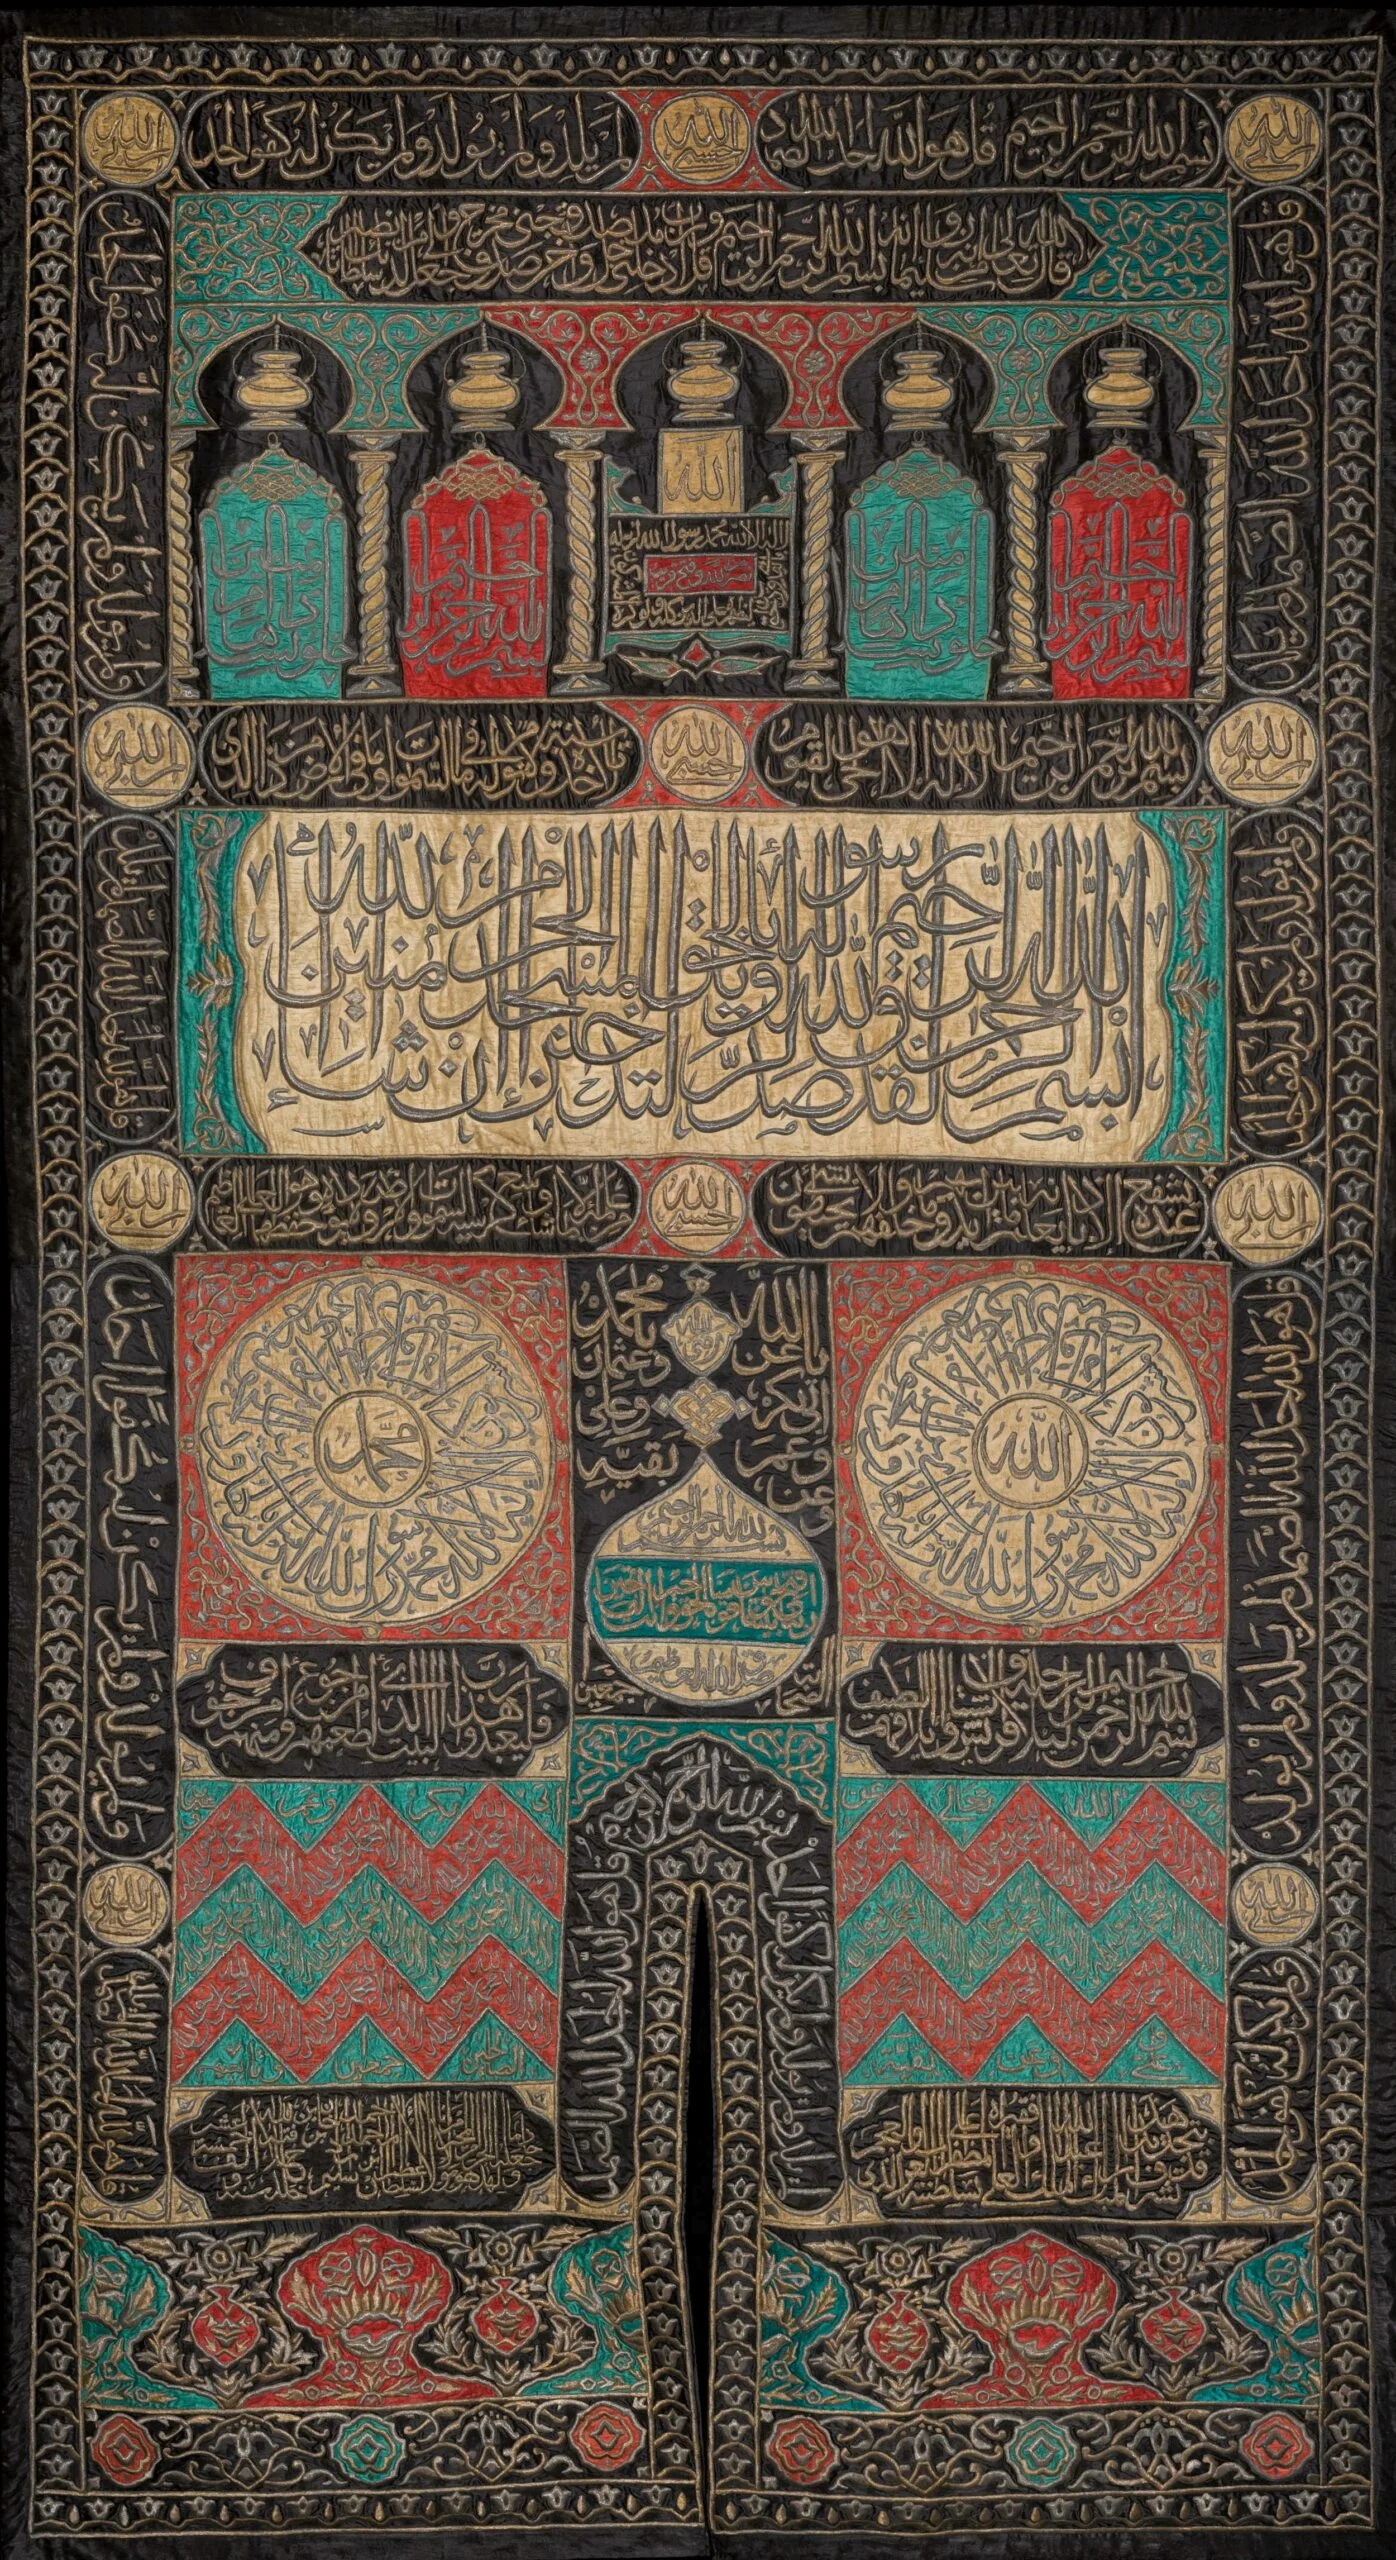 غطاء من الحرير للكعبة في مكة (كسوة) نسج في القاهرة عام 1606 م (1015 هـ).